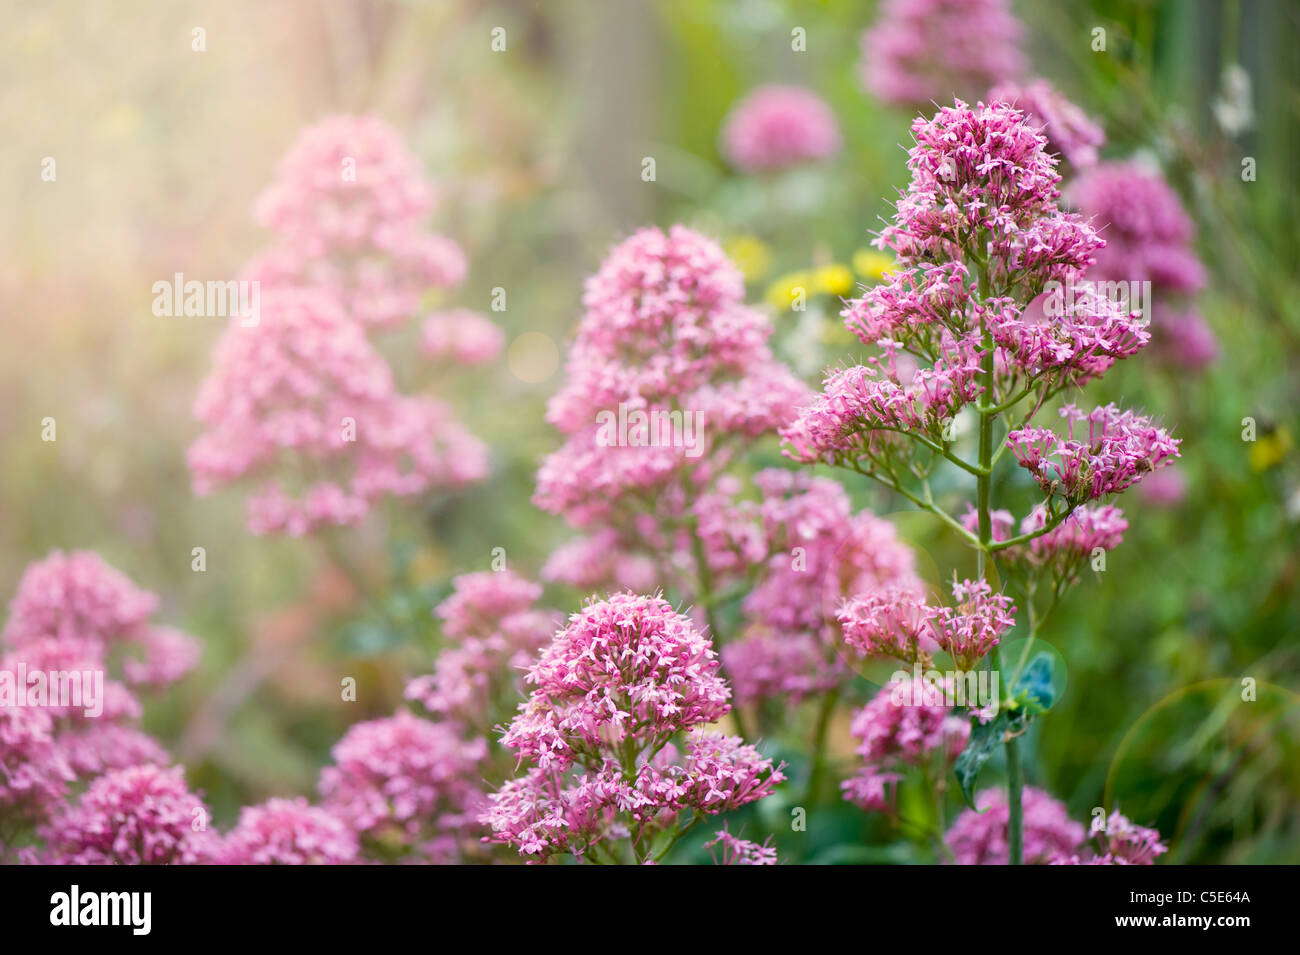 Nahaufnahme Bild der Sommer blühenden Eupatorium Cannabinum rosa Blumen, auch bekannt als Hanf Agrimony oder Heilige Seil. Stockfoto